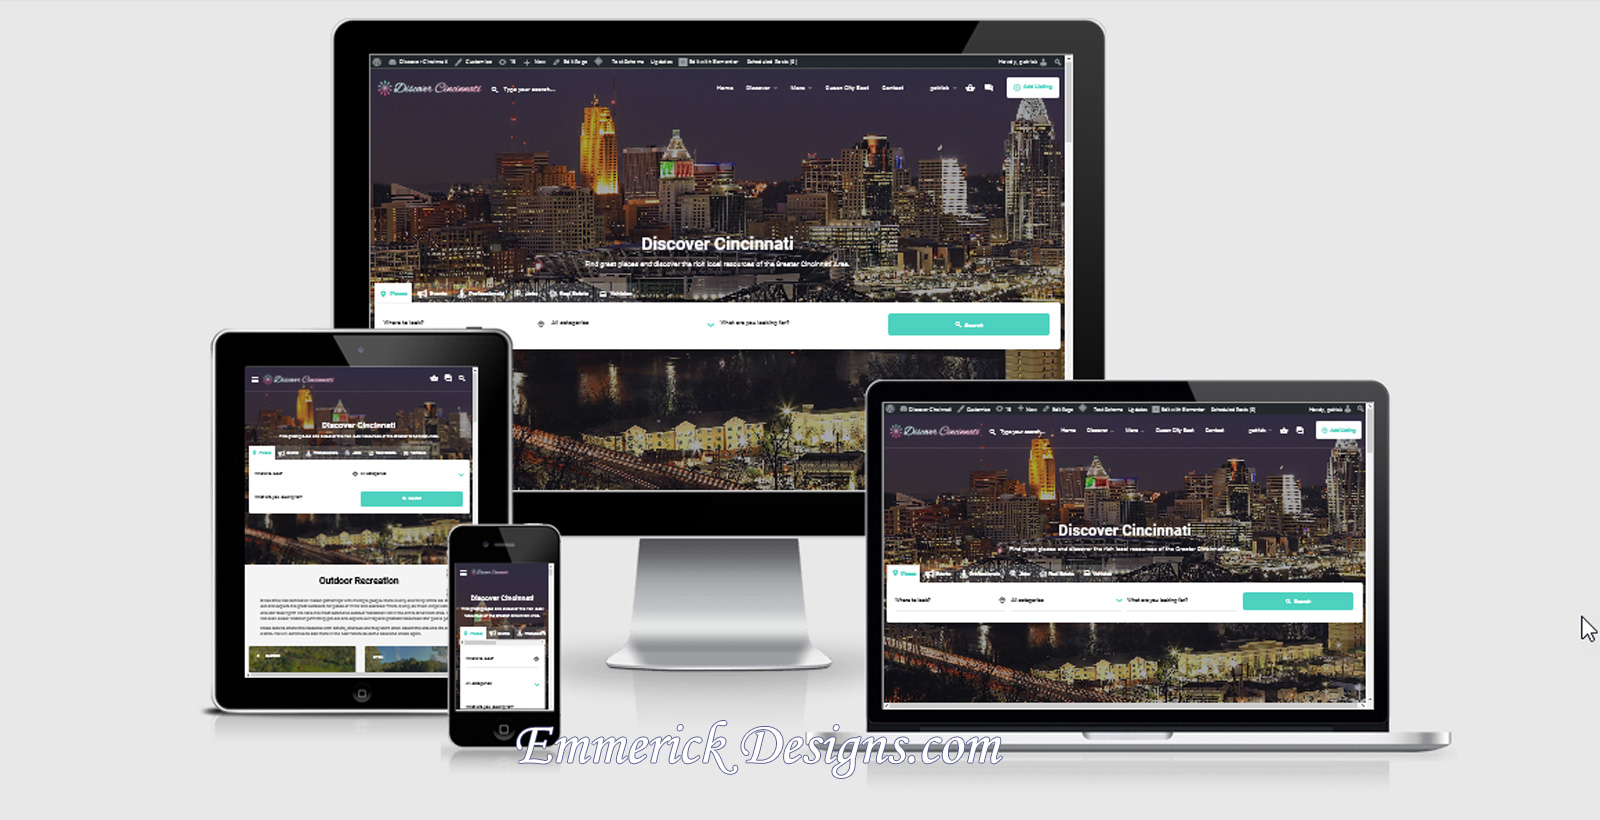 Web Design - Discover Cincinnati 10